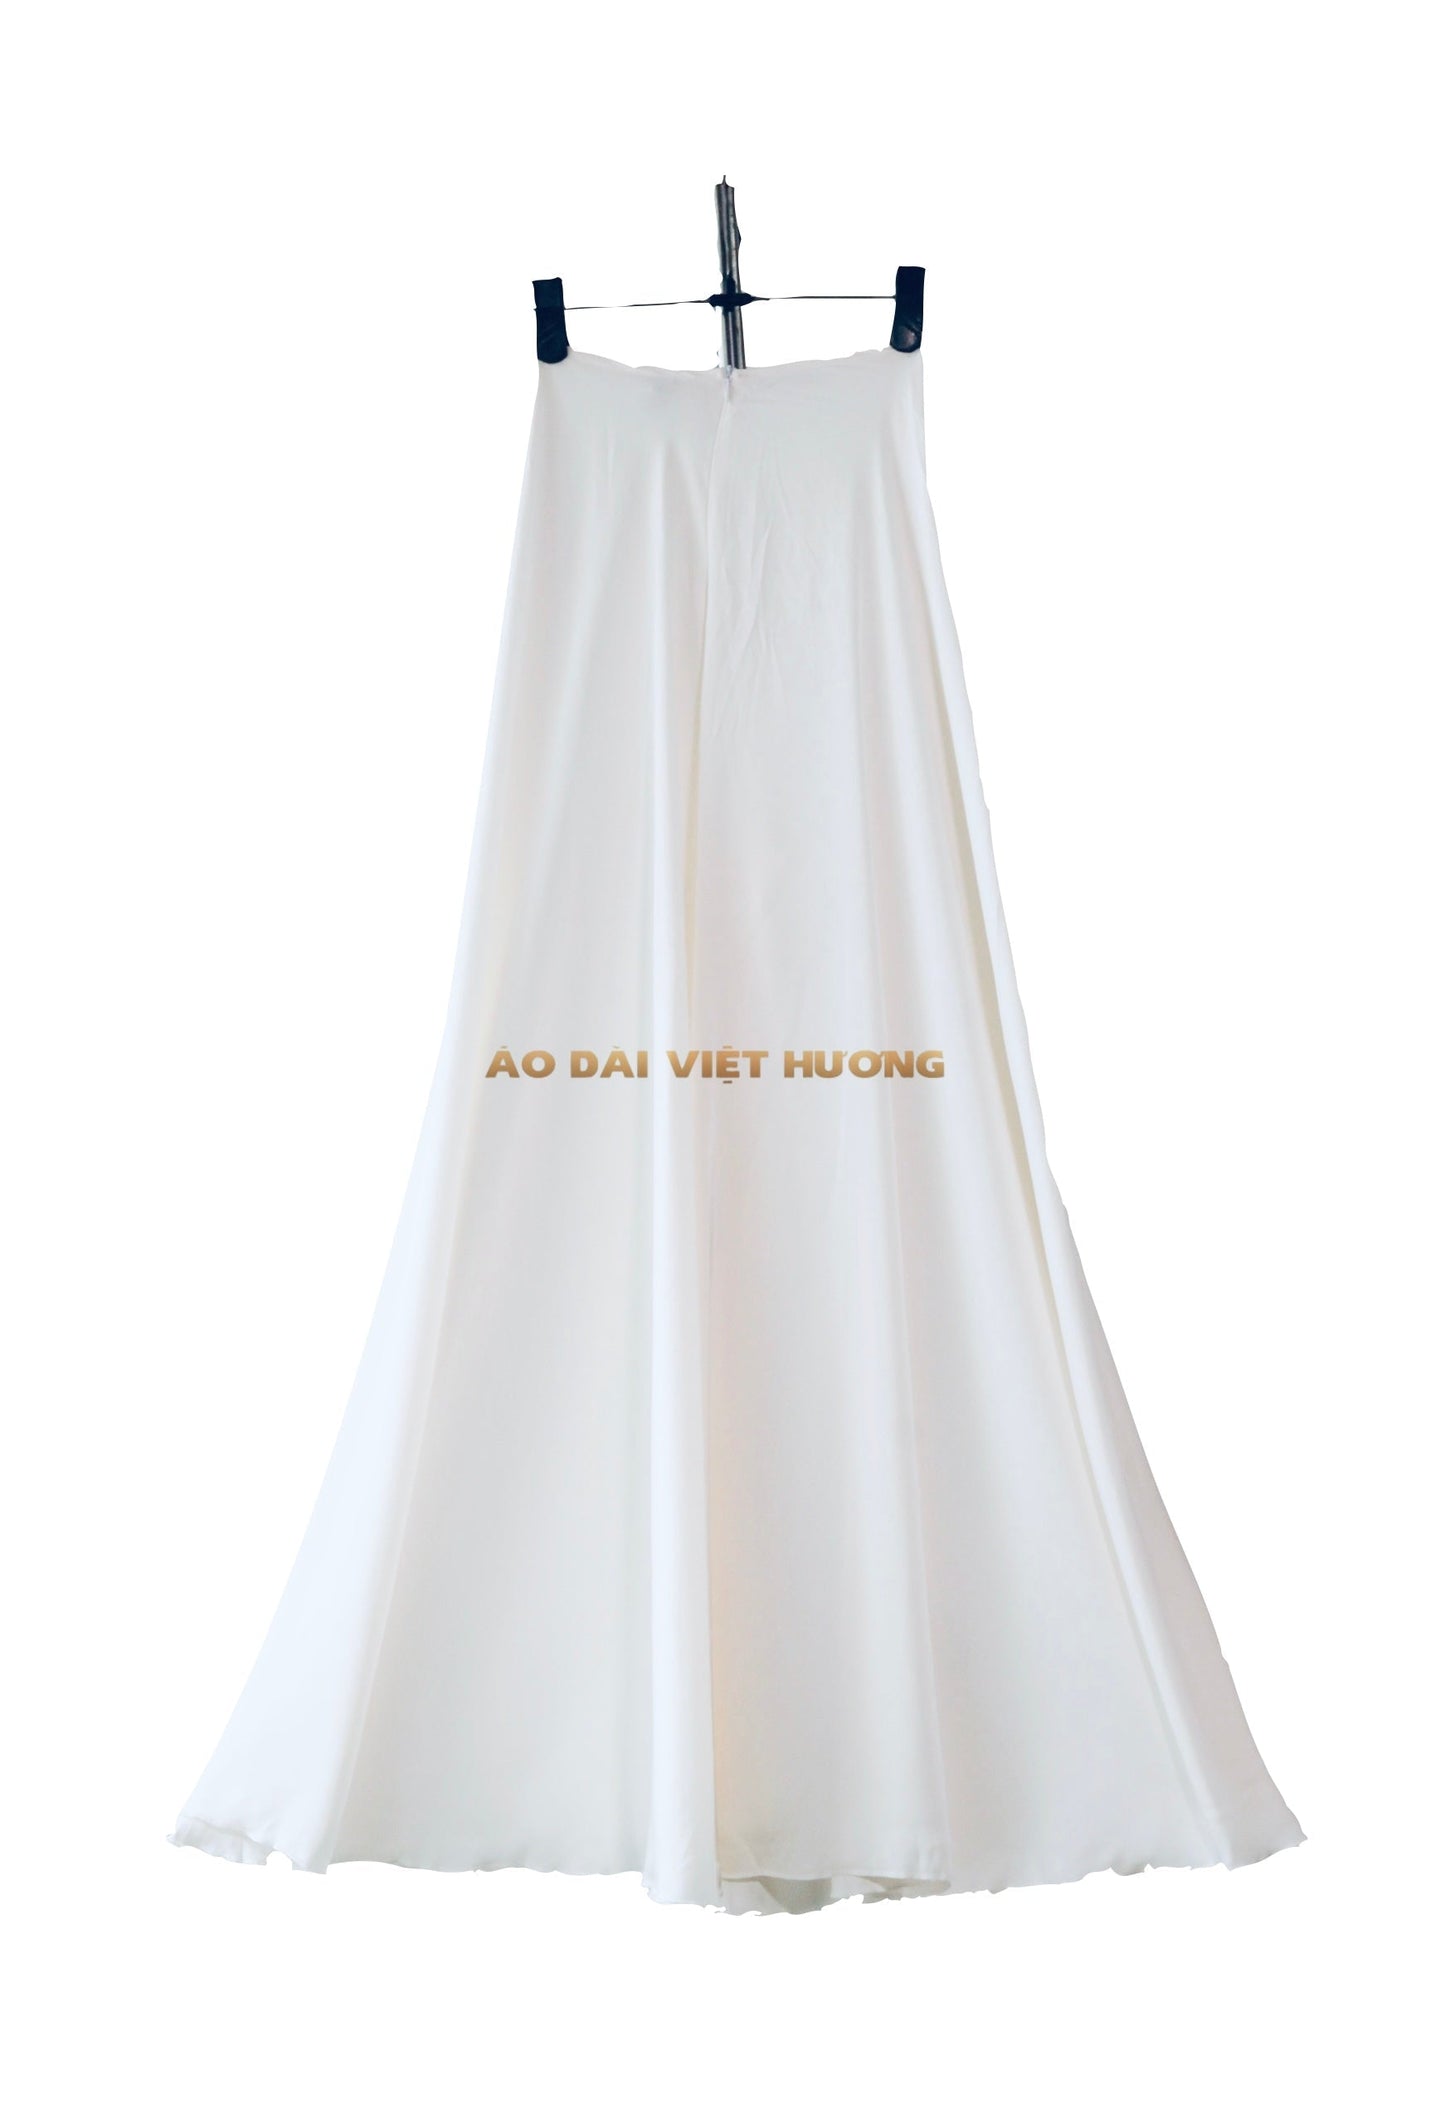 501 -  White Thái Tuấn Silk Skirt Pants (Quần Váy Ống Xéo Lụa Thái Tuấn Trắng)